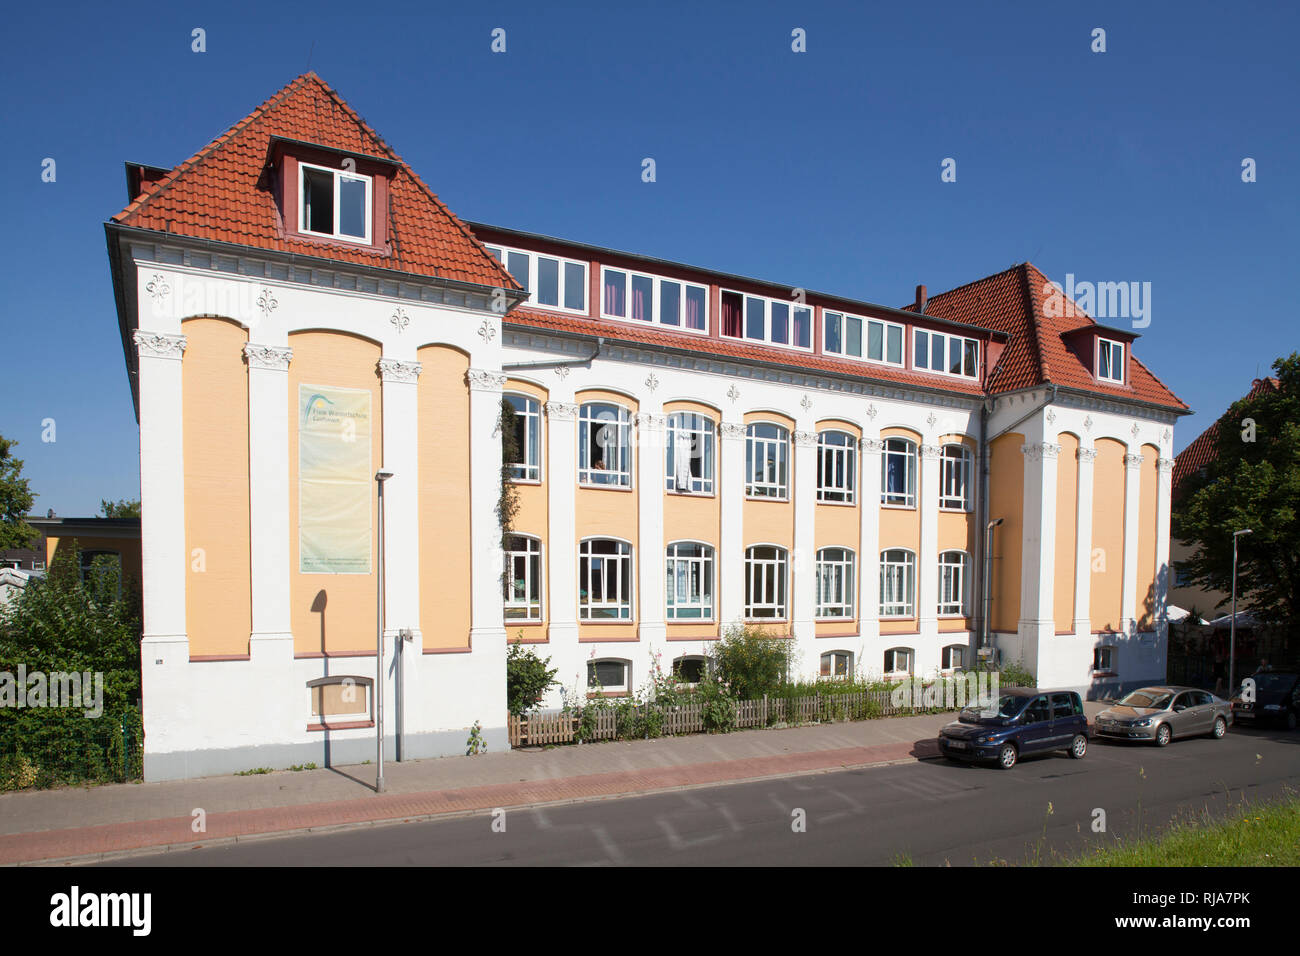 Freie Waldorfschule, Nordseeheilbad Cuxhaven, Niedersachsen, Deutschland, Europa Foto Stock